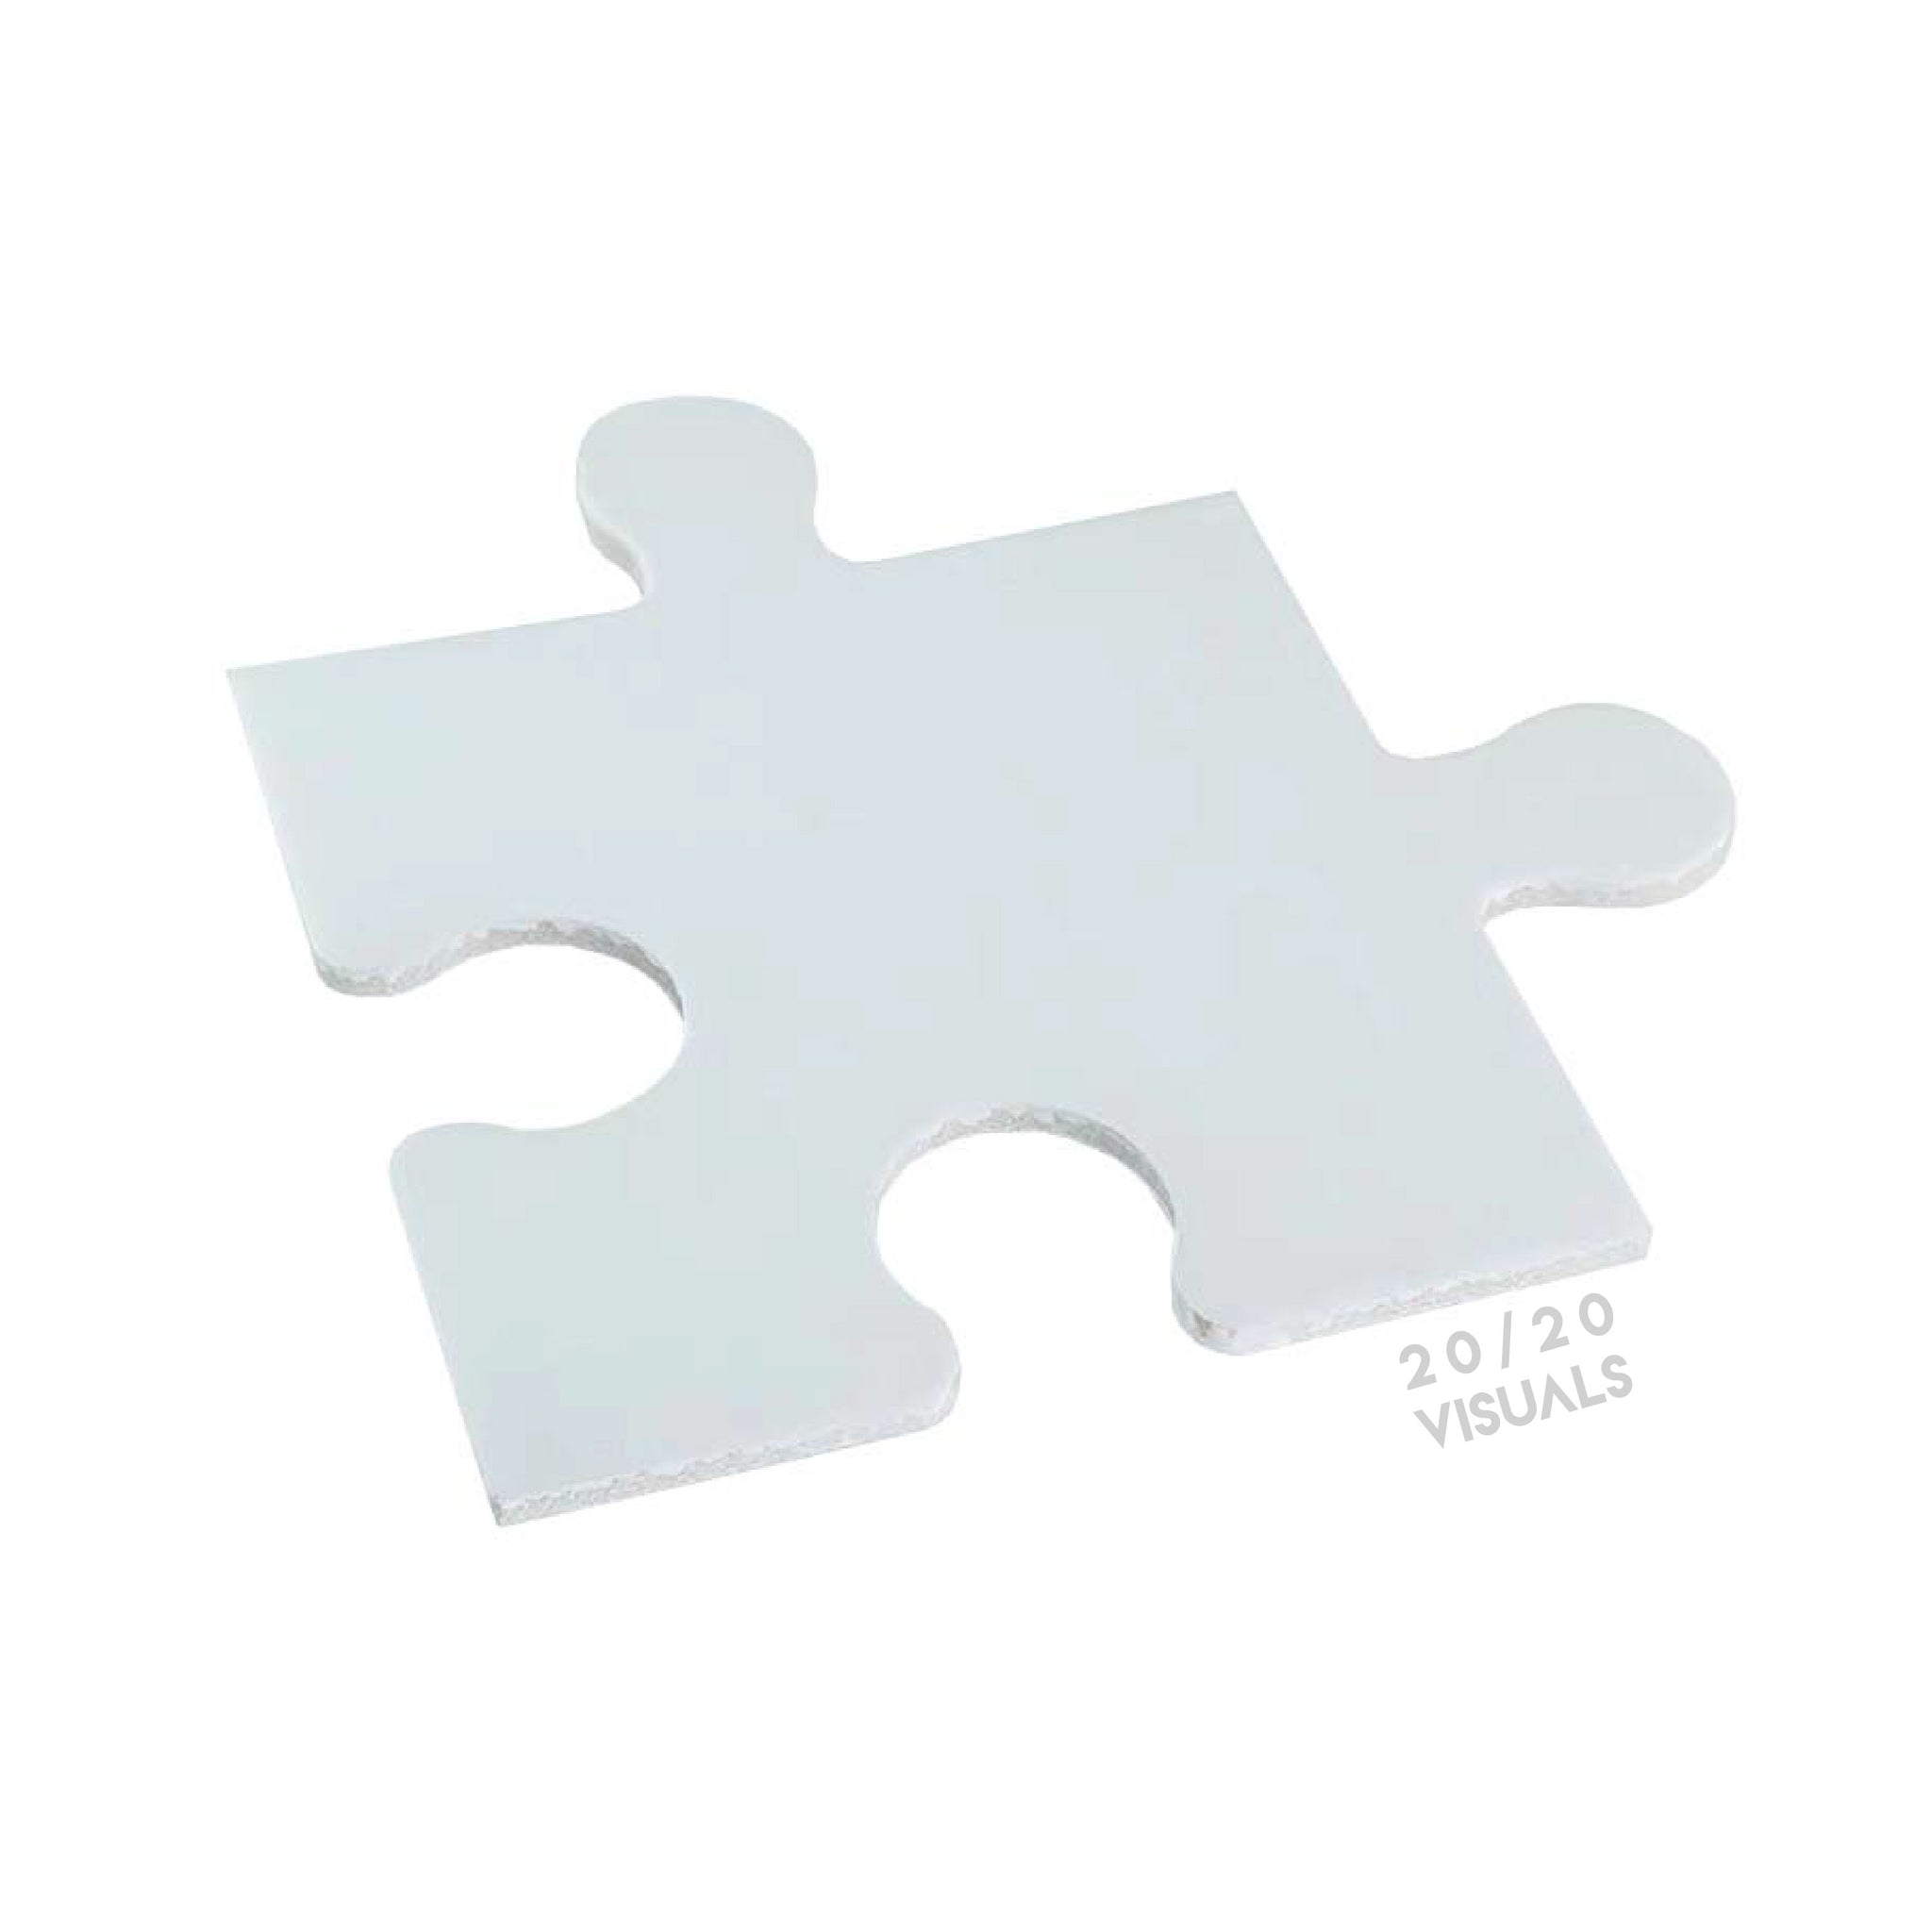 20X20 Puzzle Piece Tile